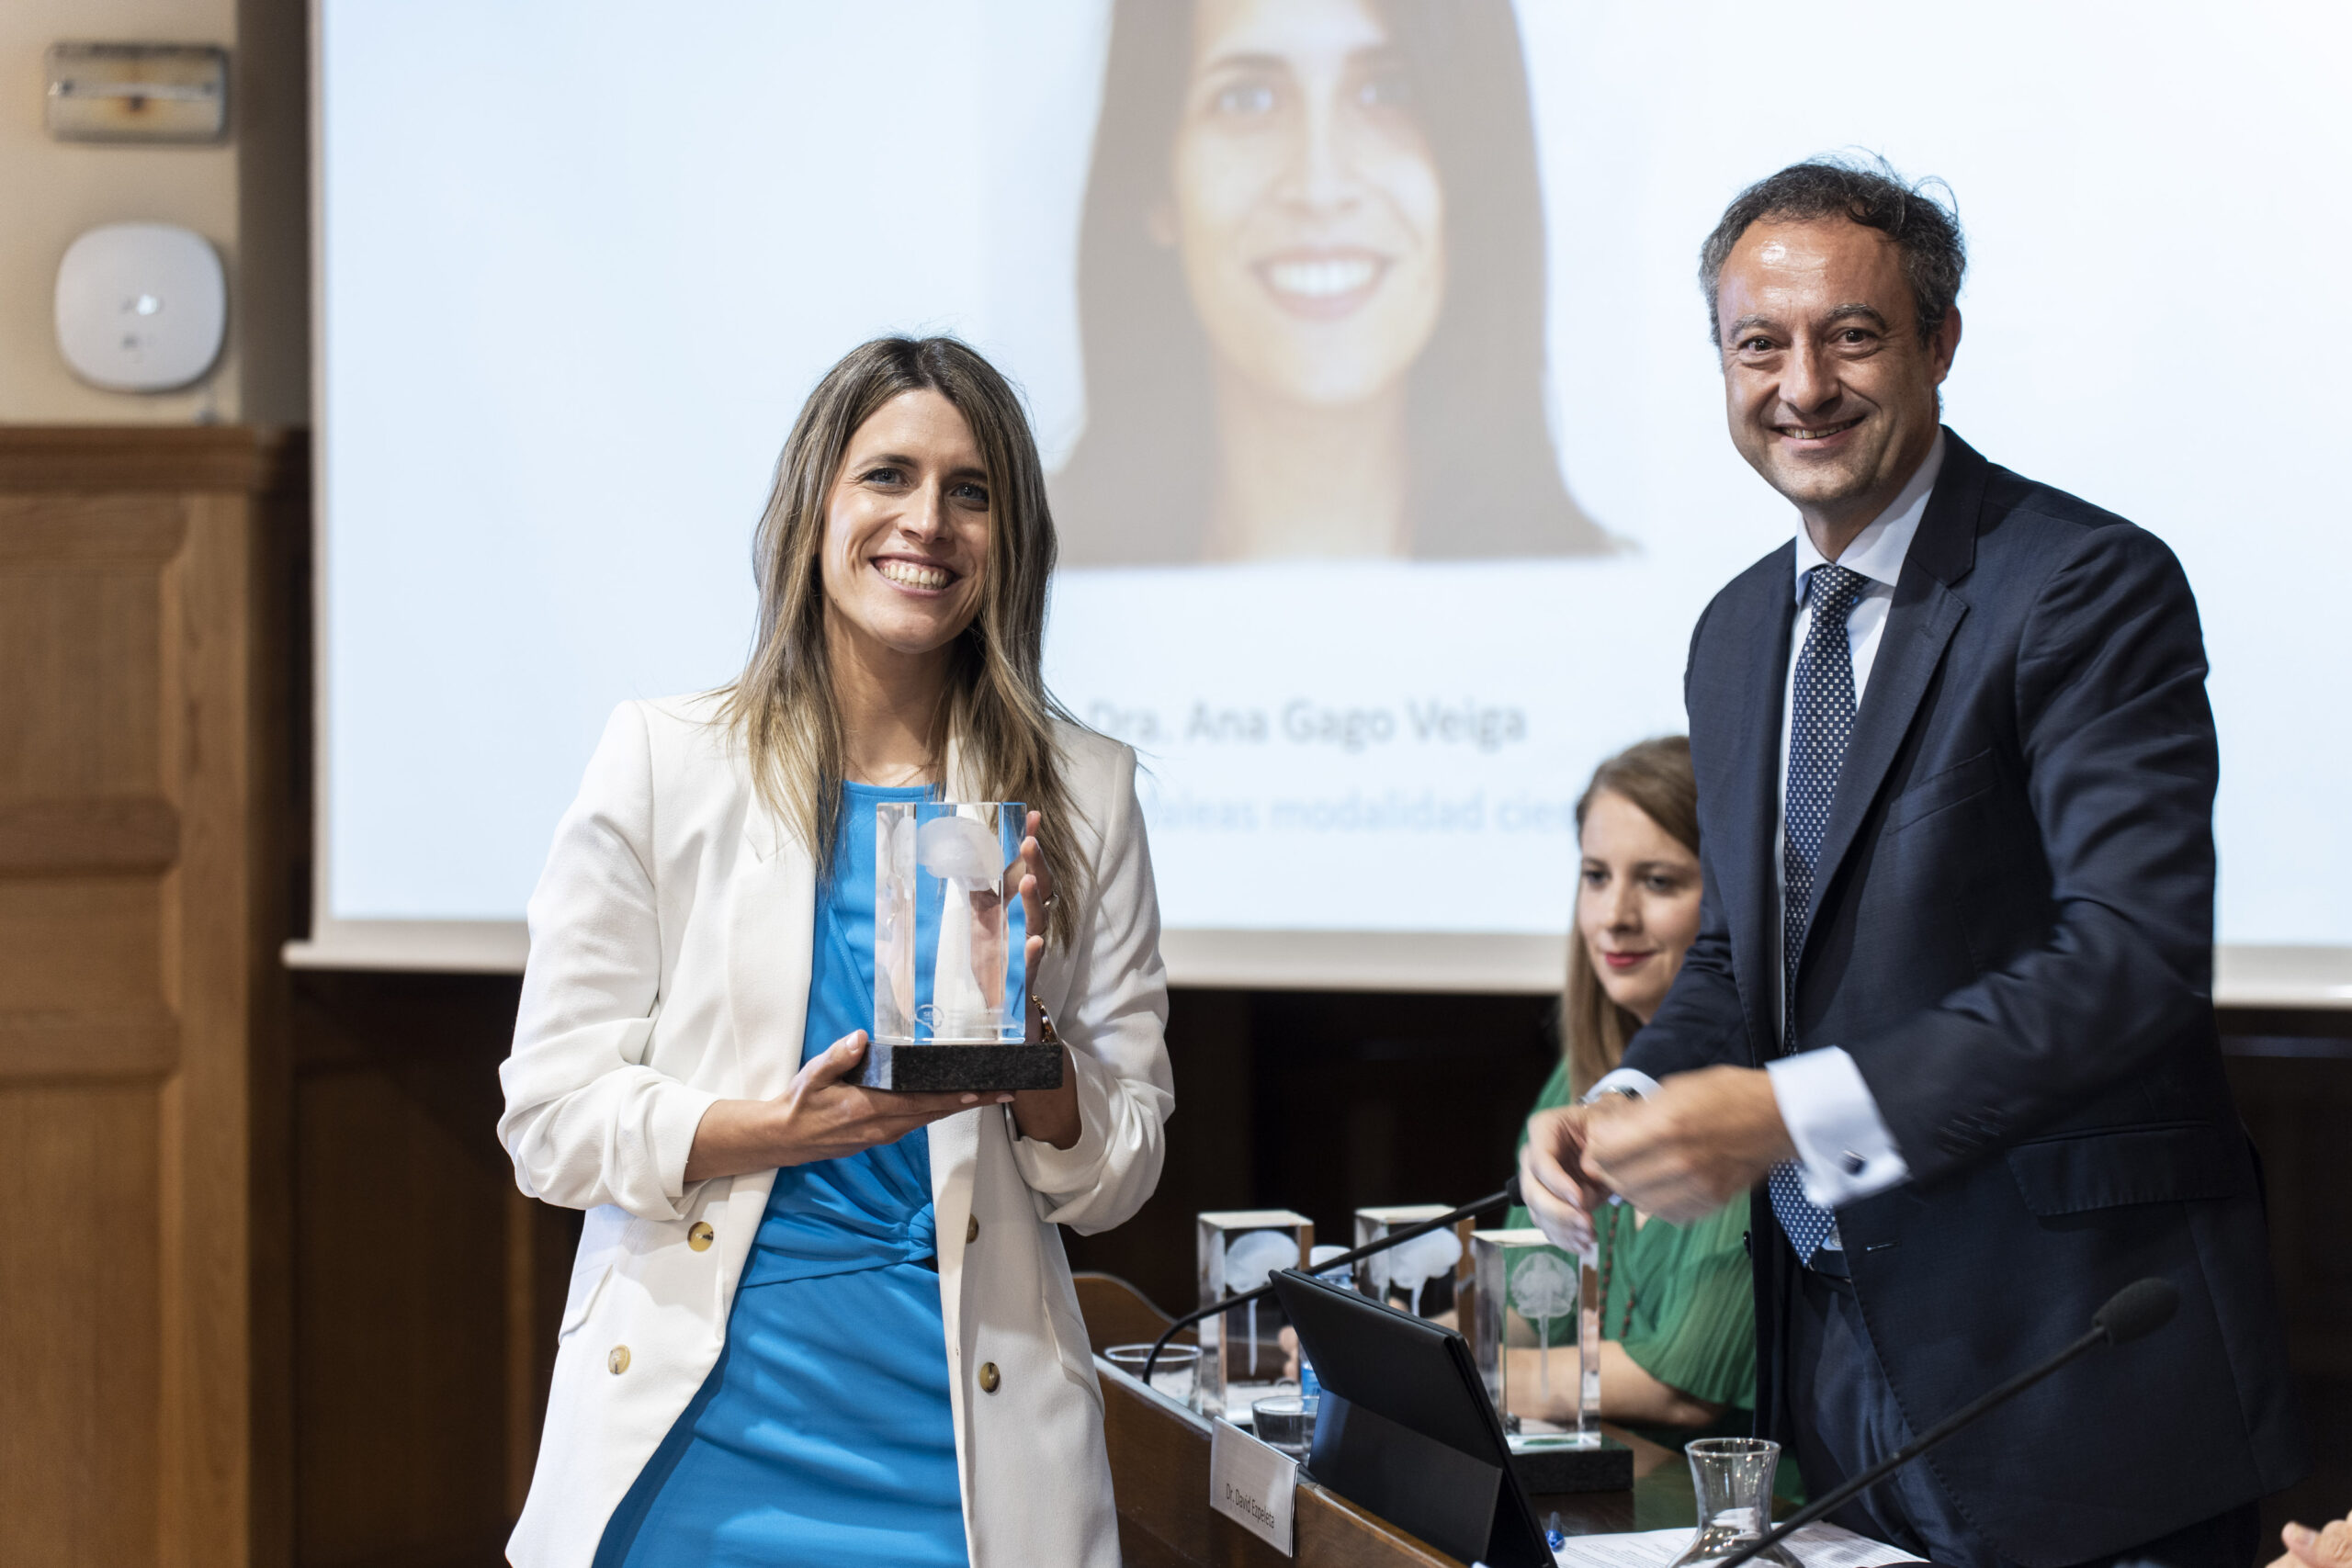 La neuróloga viguesa Ana Gago recibe el Premio SEN Cefaleas por su labor científica